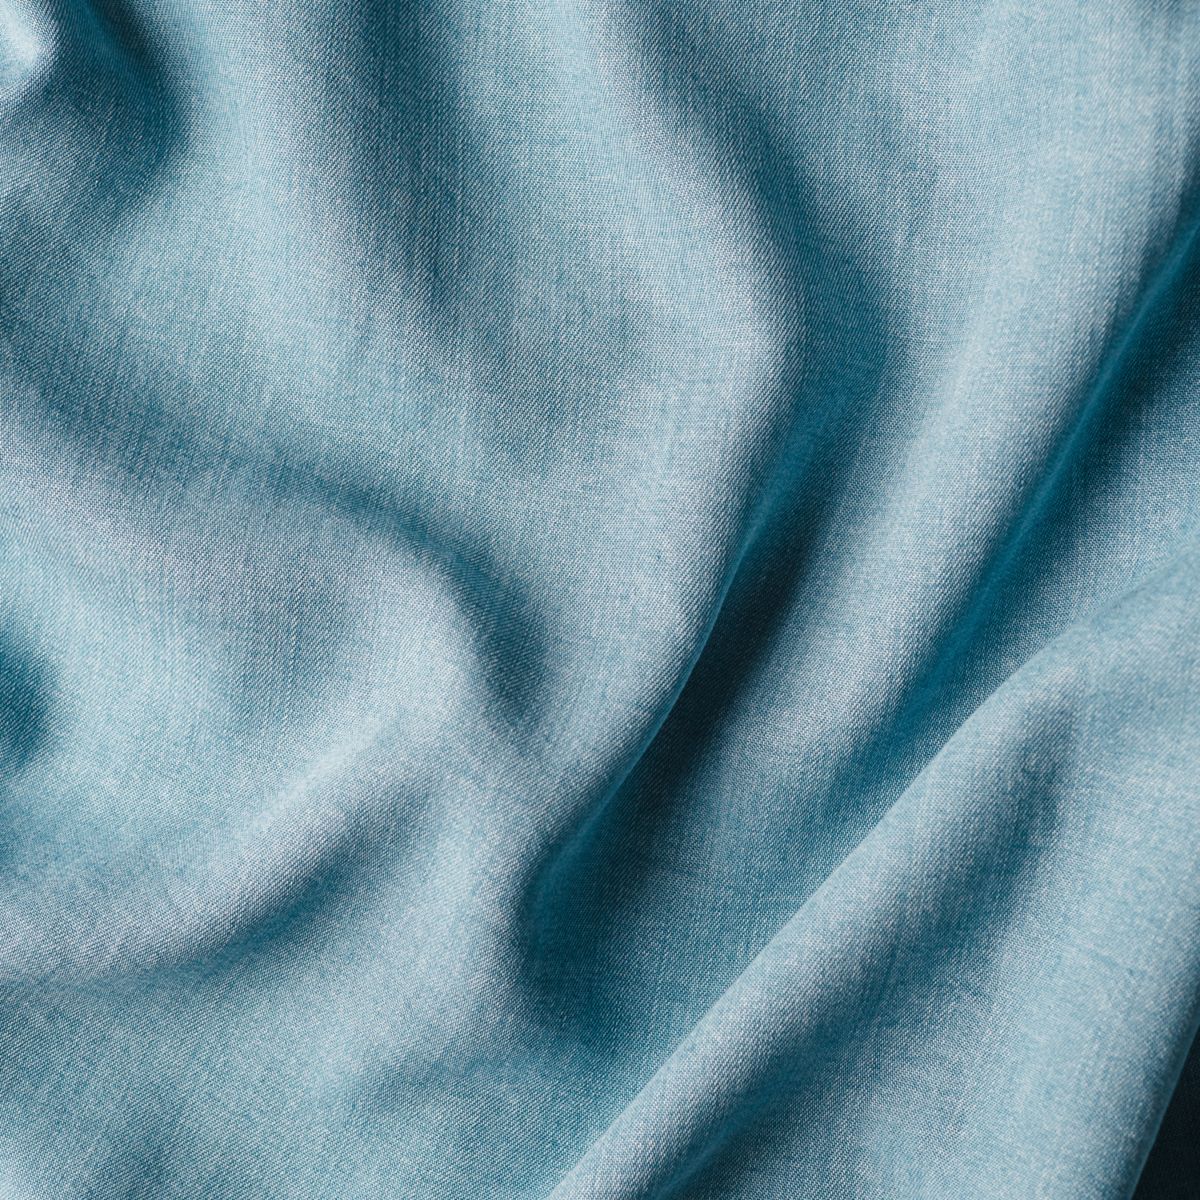 Blue fabric